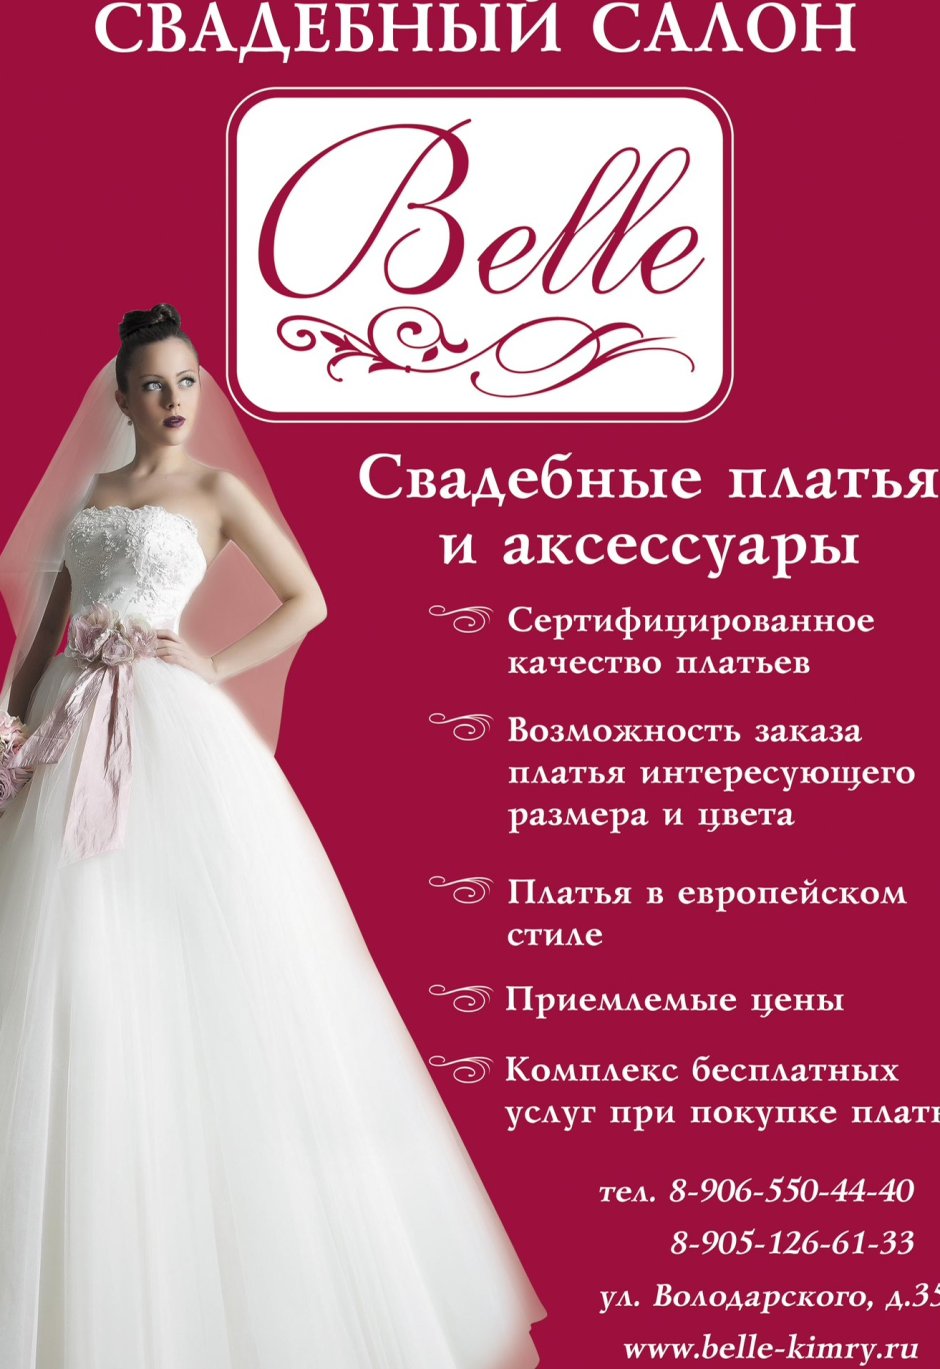 Свадебные платья Оксана Муха 2020